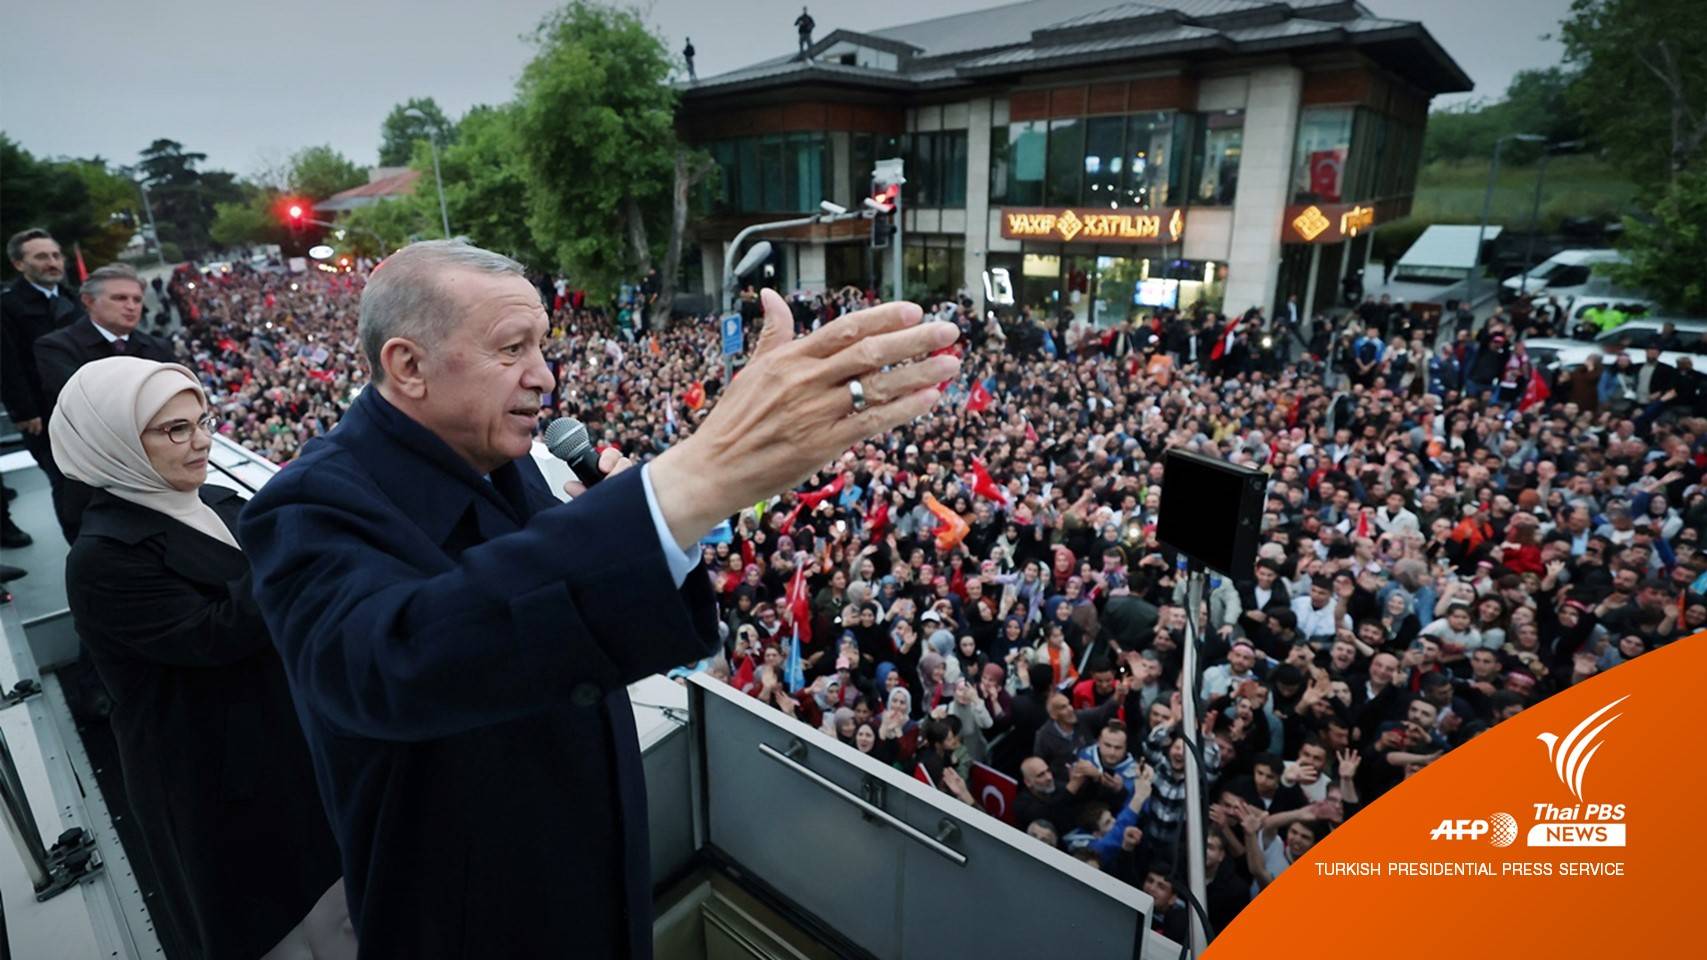 "เรเซป ไทยิป เออร์ดวน"  ผู้นำตุรกีชนะเลือกตั้ง ครองอำนาจต่อ 5 ปี